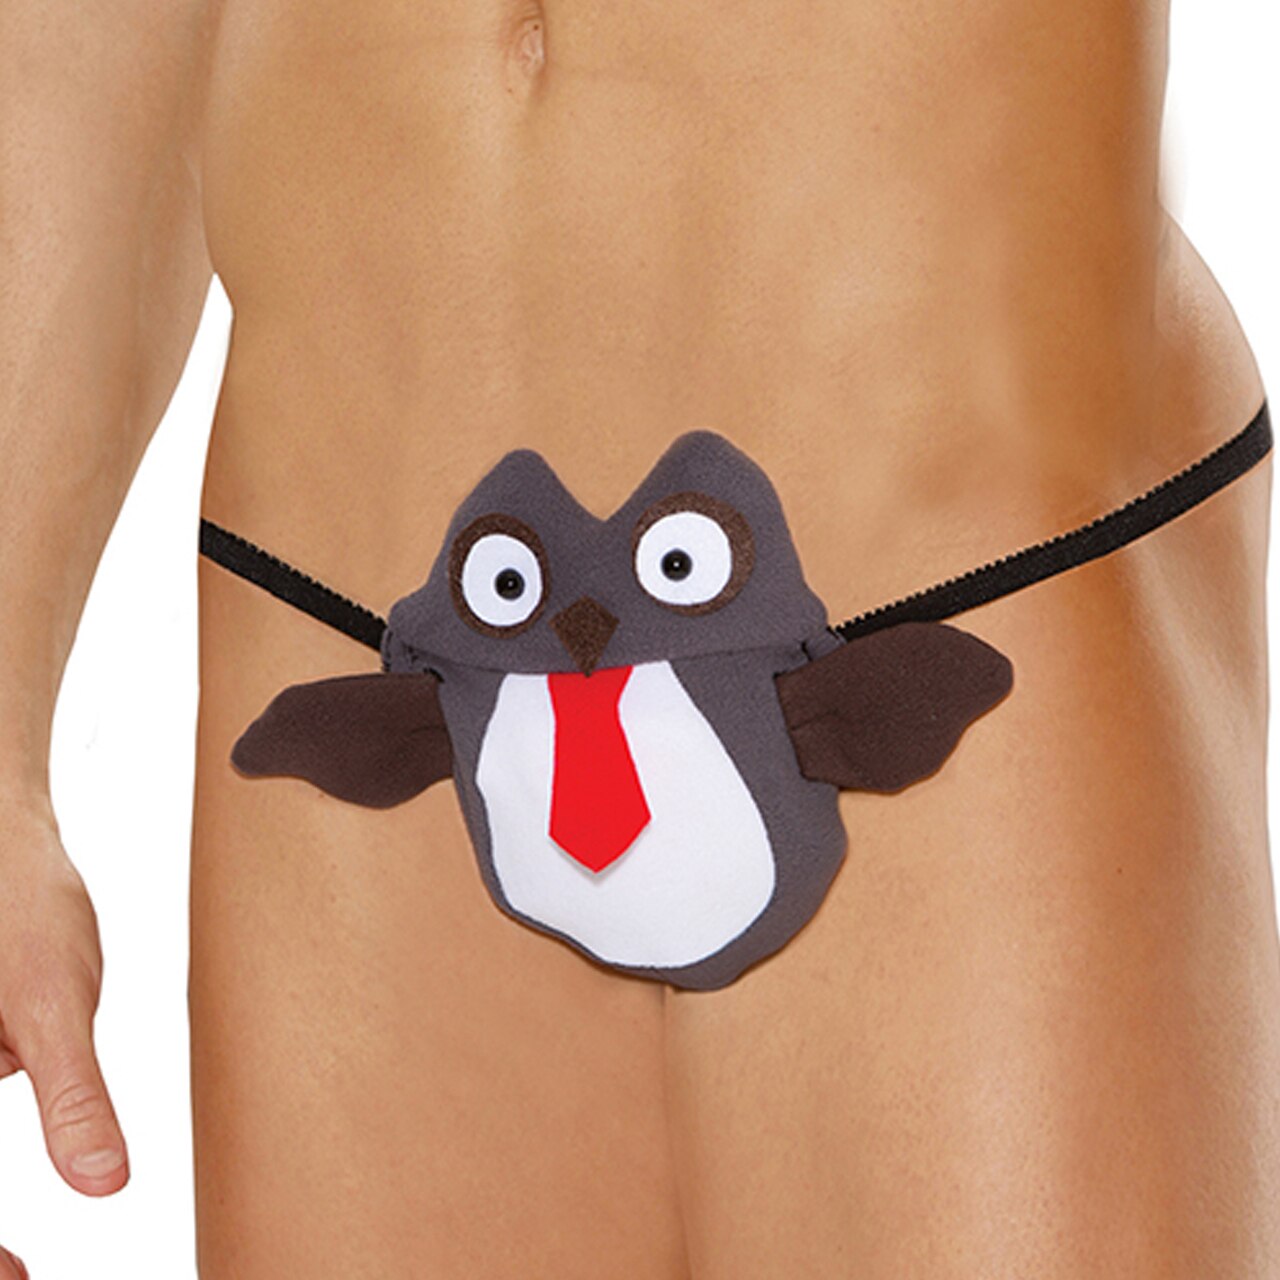 SALE - Mens Owl Pouch G string Novelty Underwear